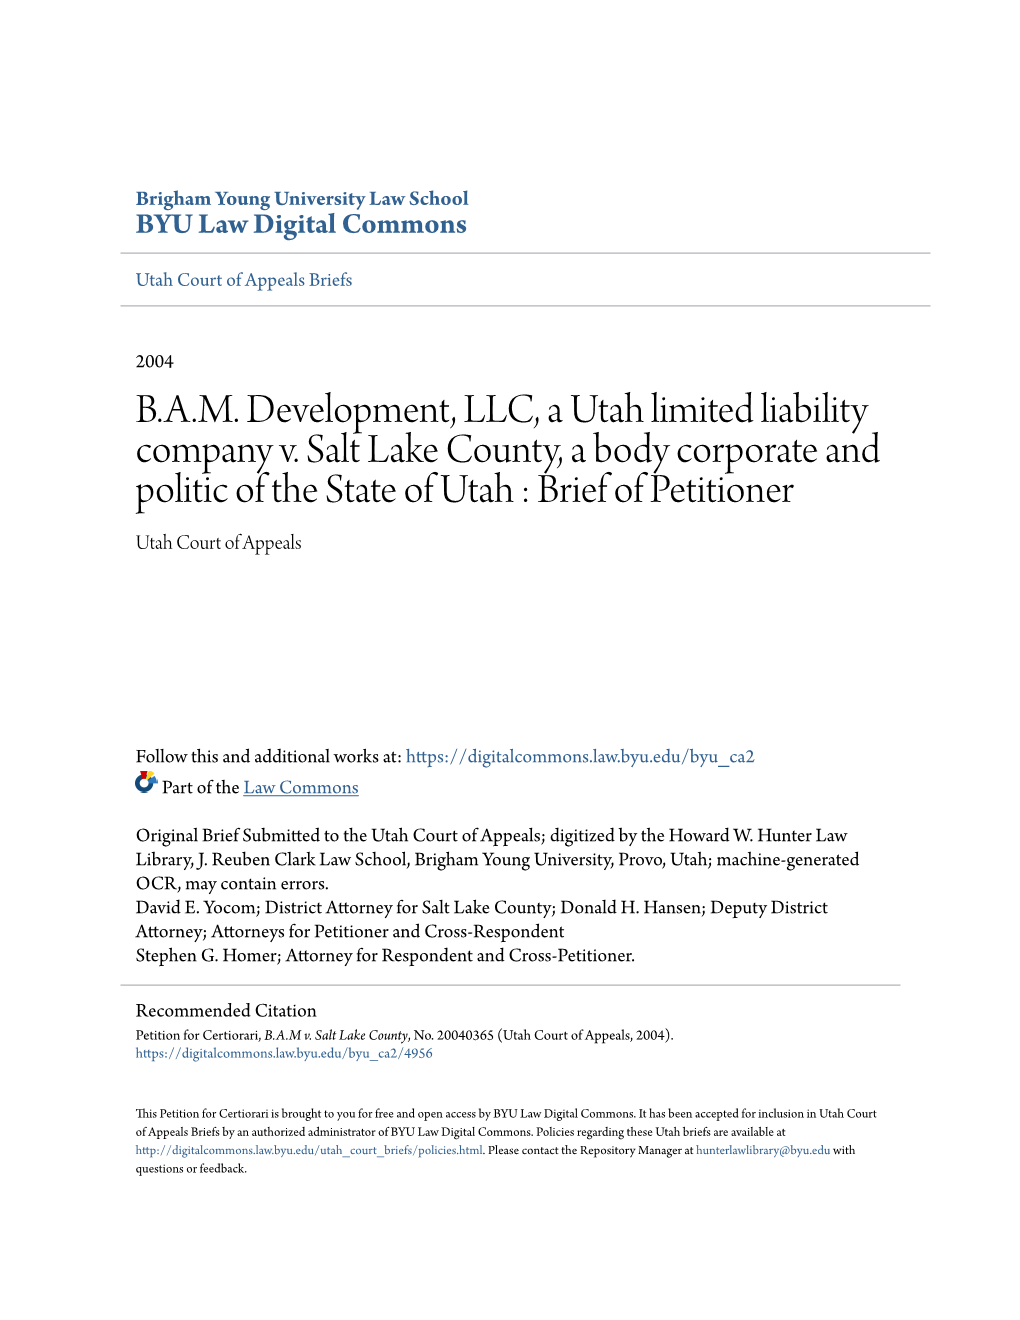 B.A.M. Development, LLC, a Utah Limited Liability Company V. Salt